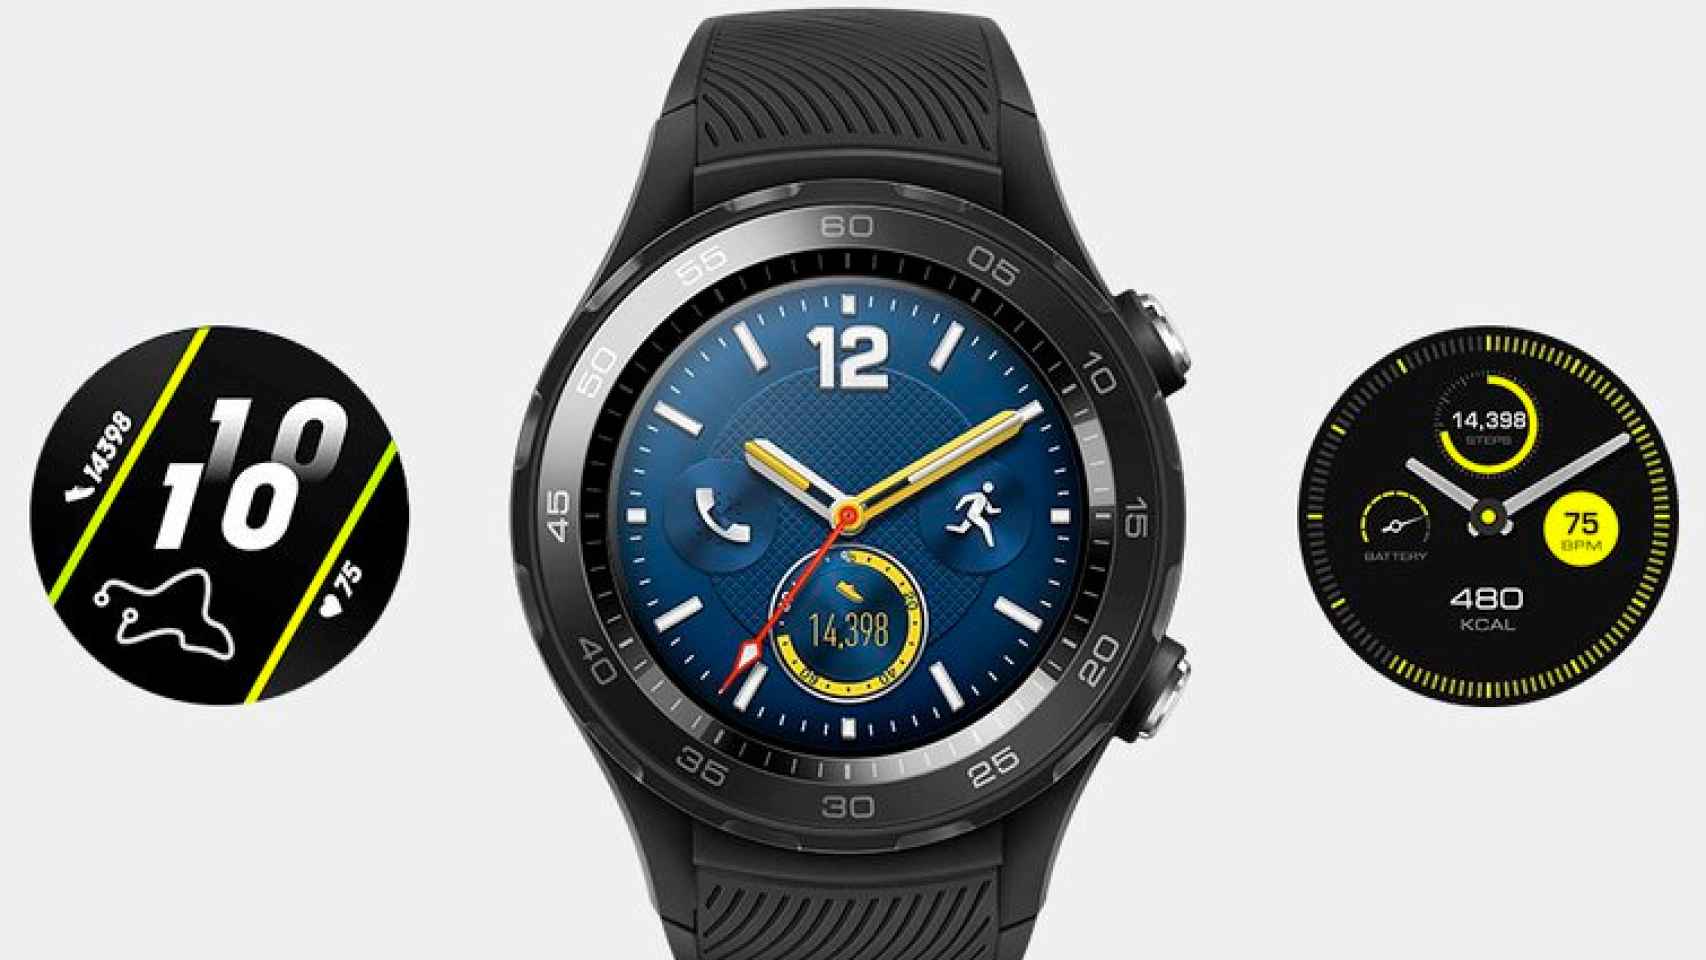 El Huawei Watch 2 2018 al descubierto: Wear OS, GPS, Wifi…